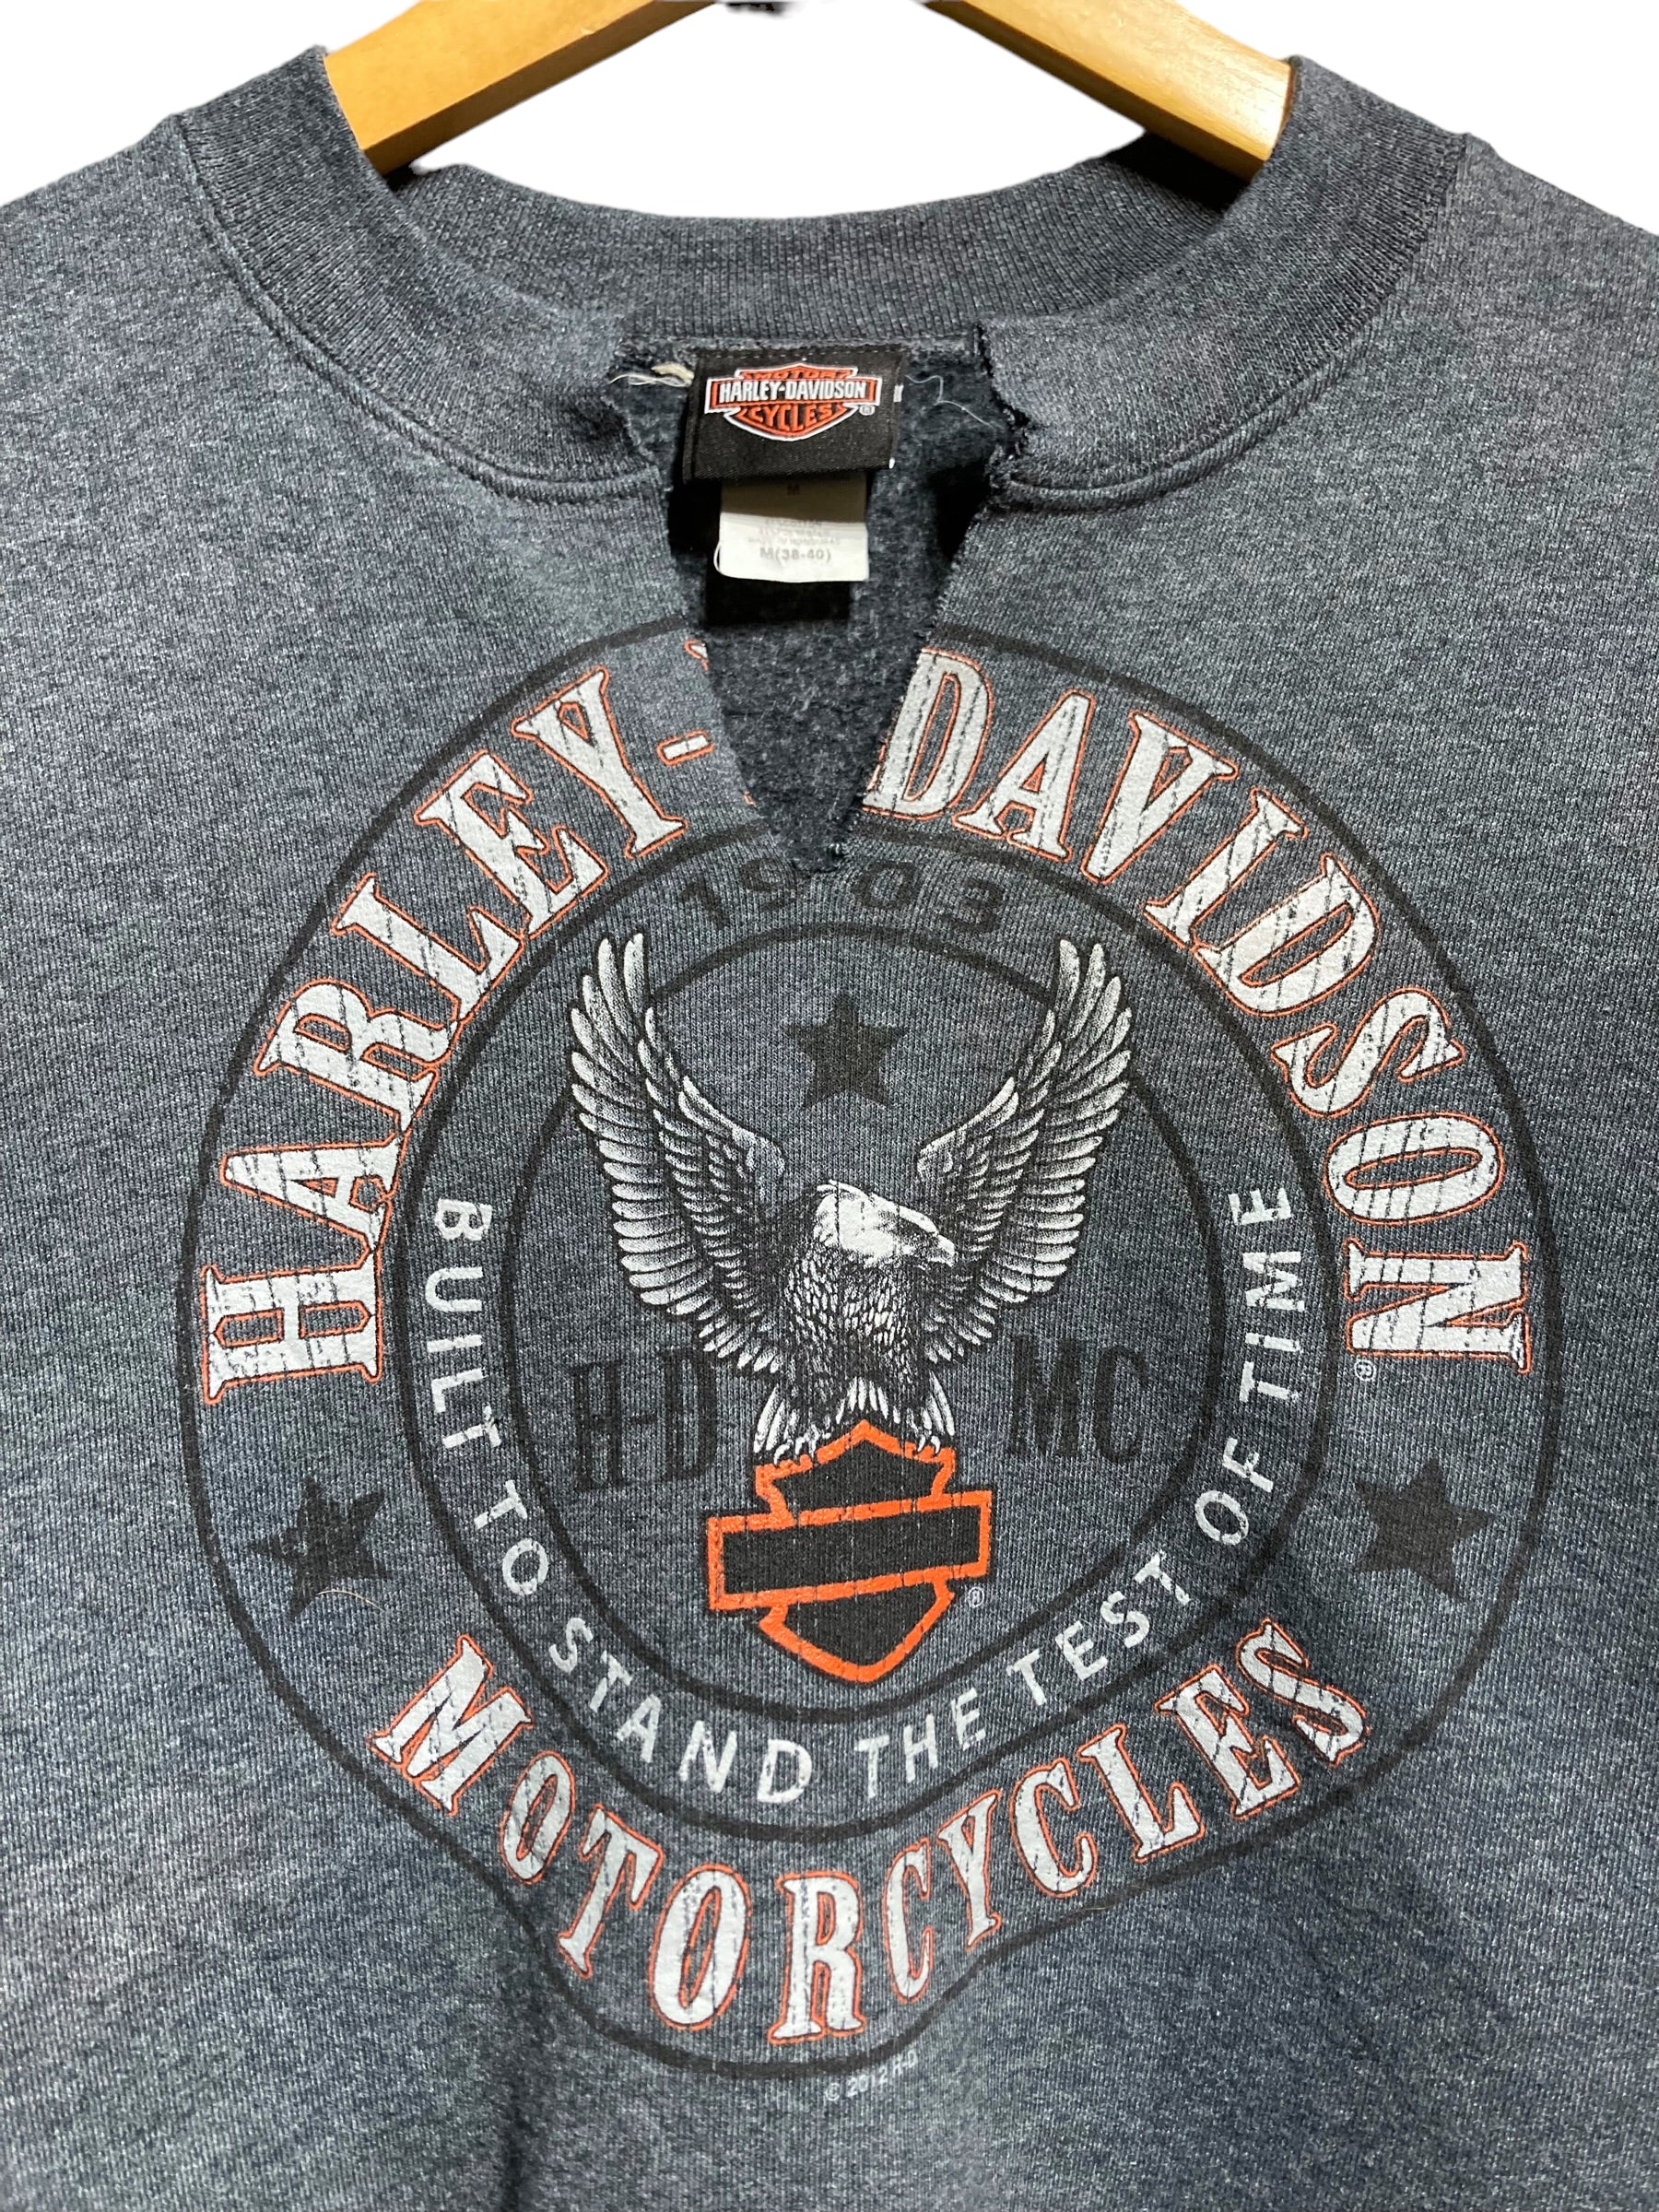 Harley Davidson ハーレーダビッドソン スウェット トレーナー